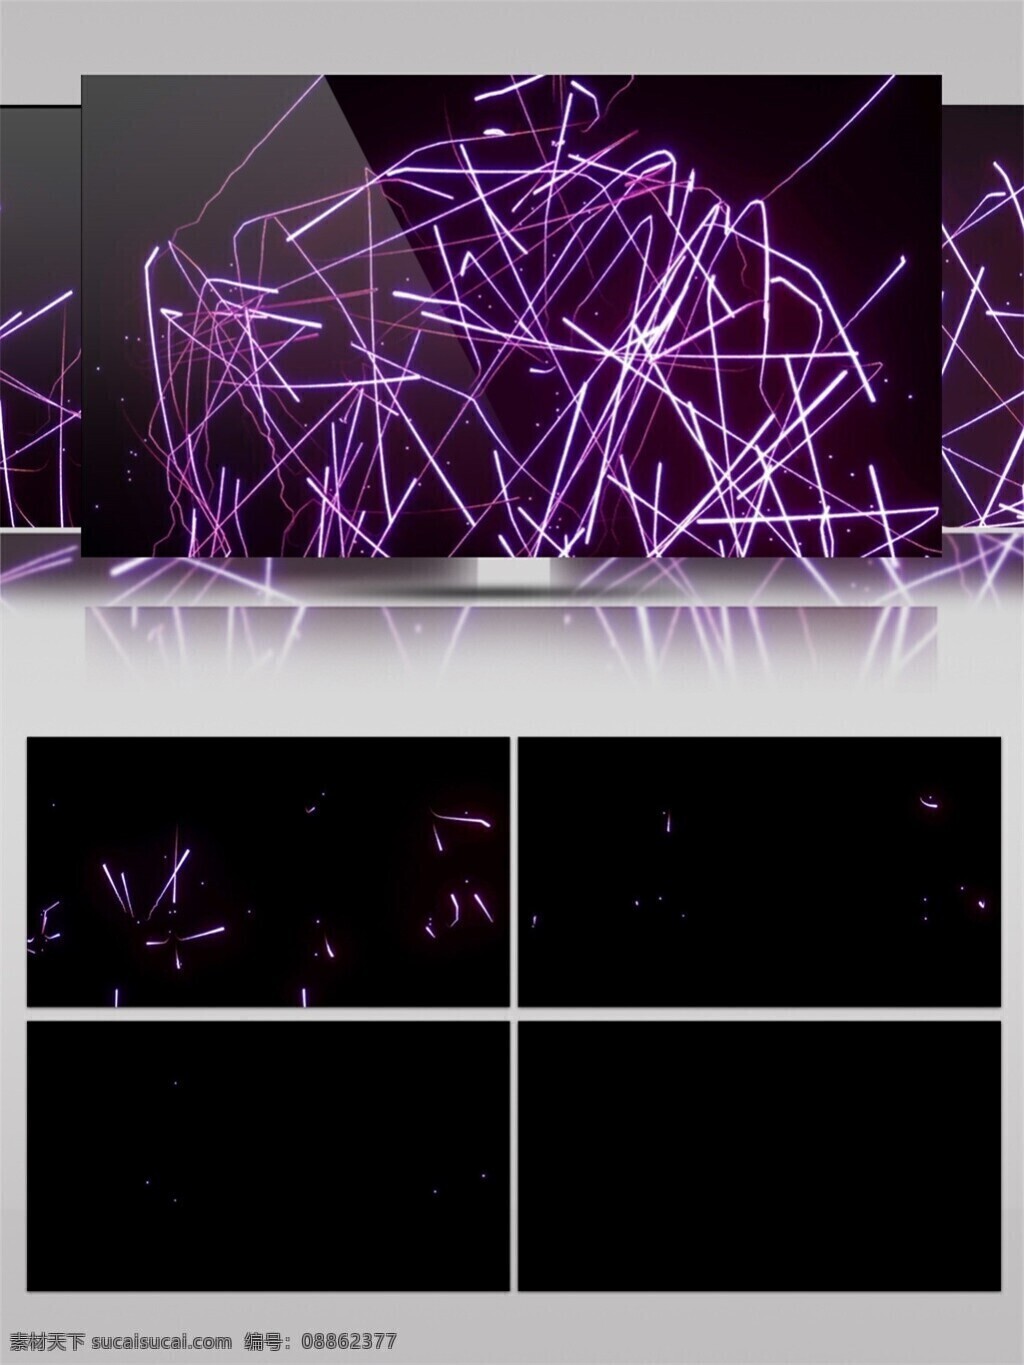 光斑散射 光束 激光 视觉享受 手机壁纸 紫色 缤纷 动态 视频